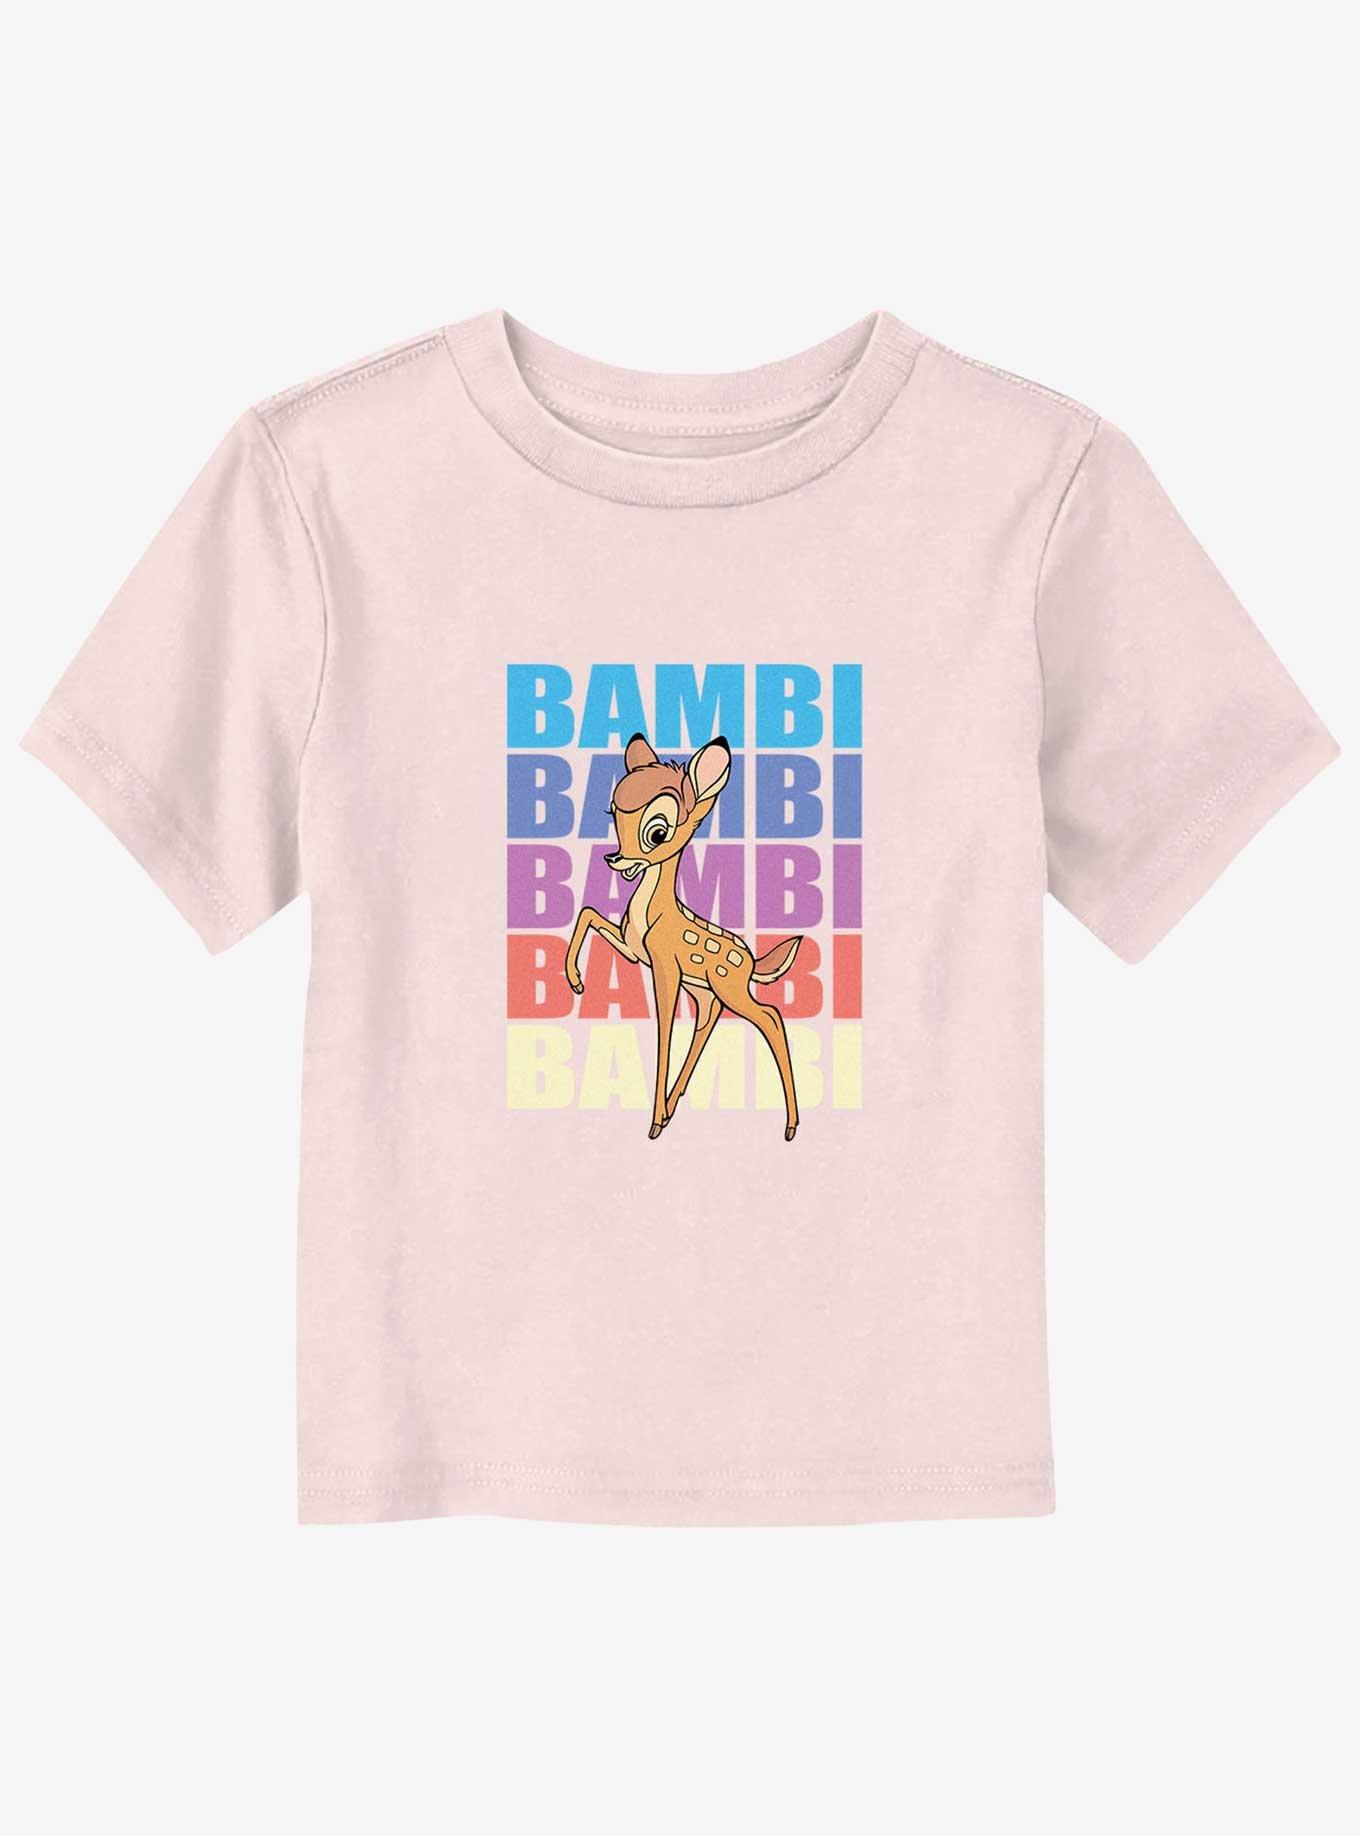 Disney Bambi Name Stacked Toddler T-Shirt, LIGHT PINK, hi-res